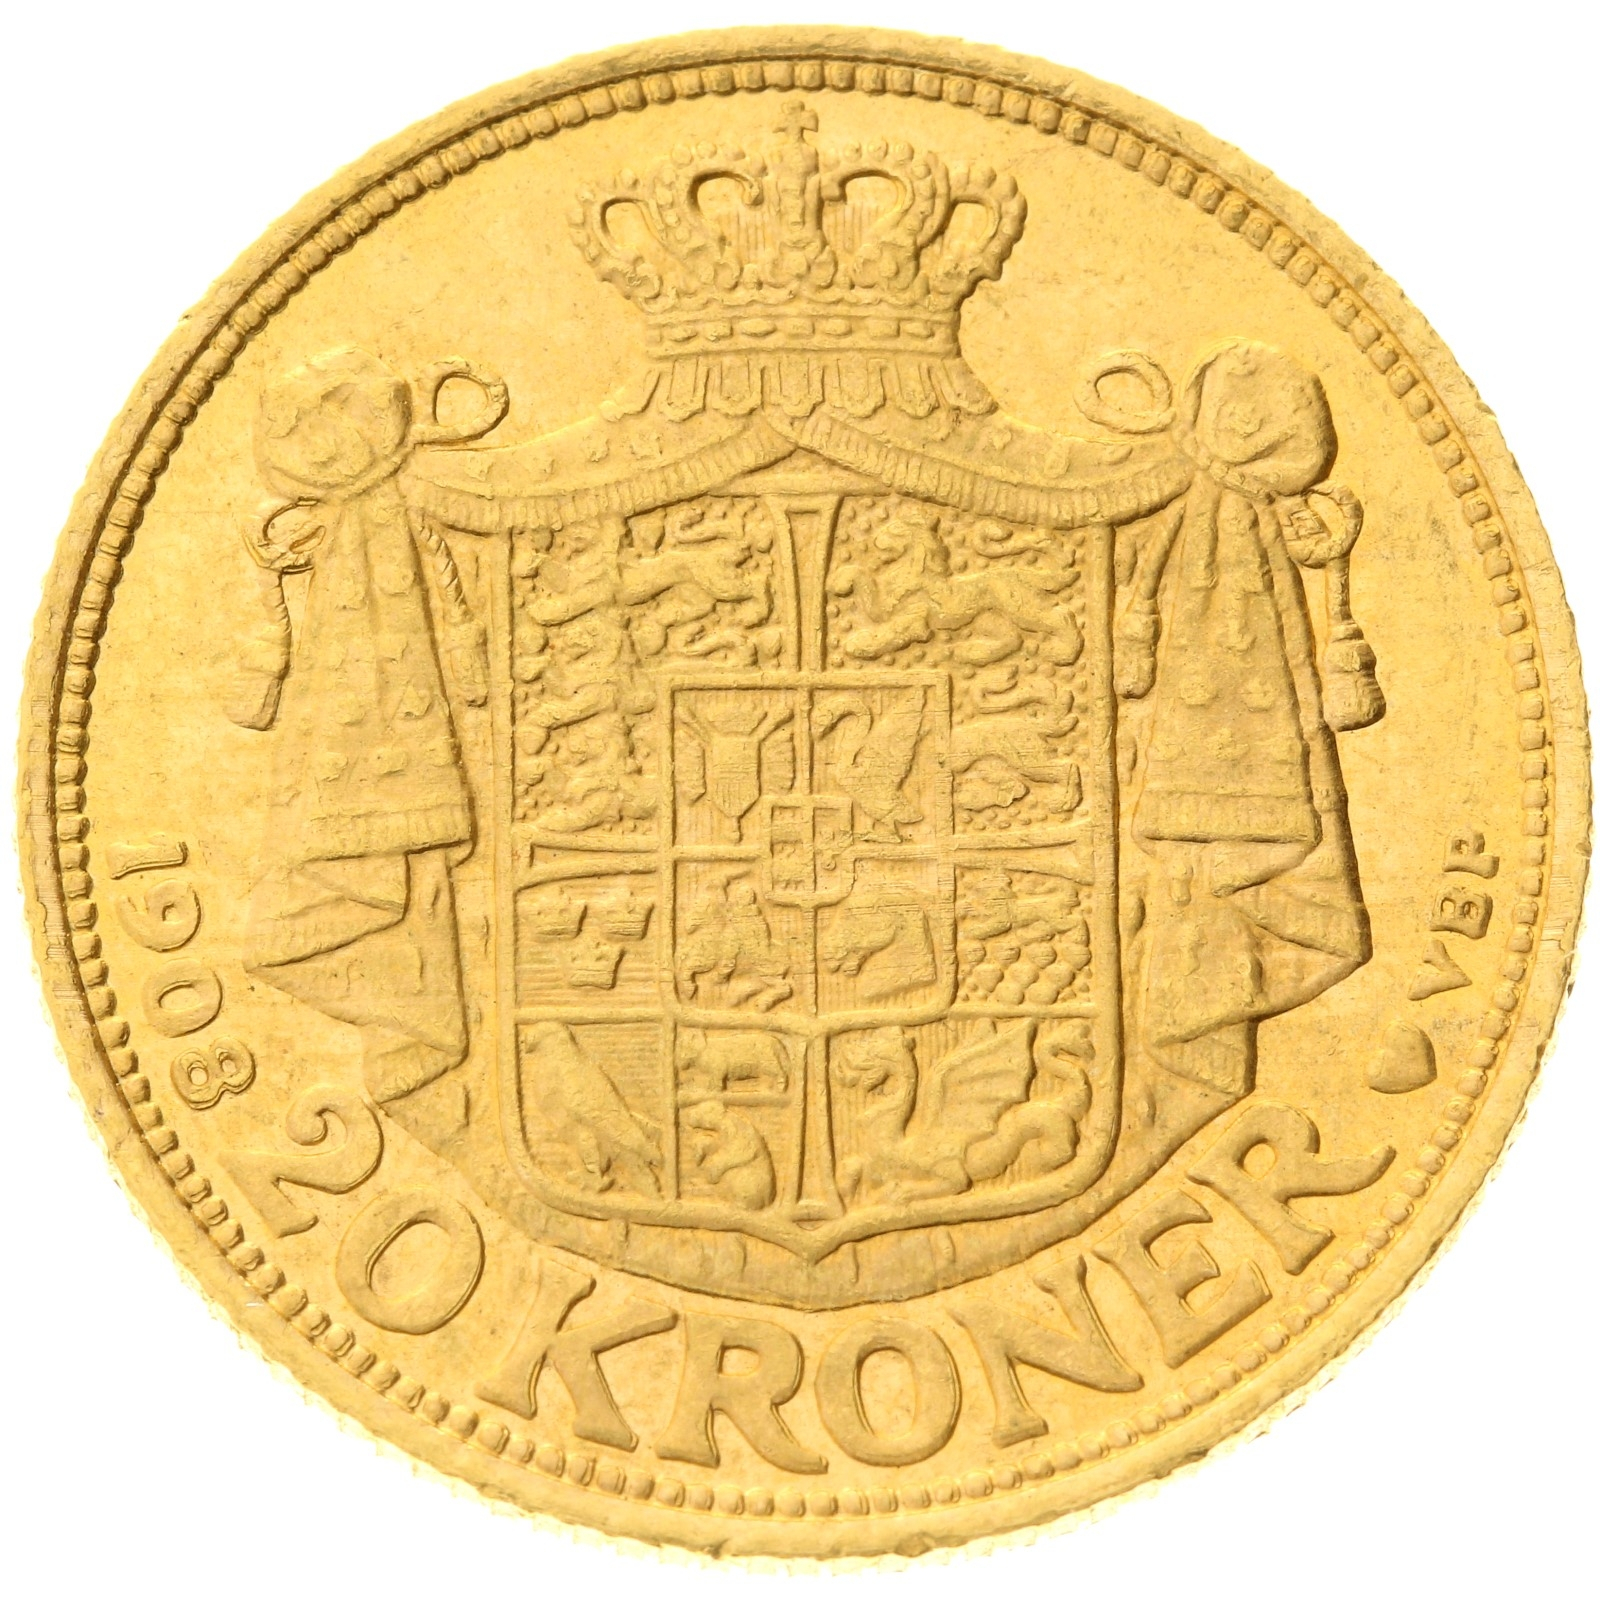 Denmark - 20 kroner - 1908 - Frederik VIII 